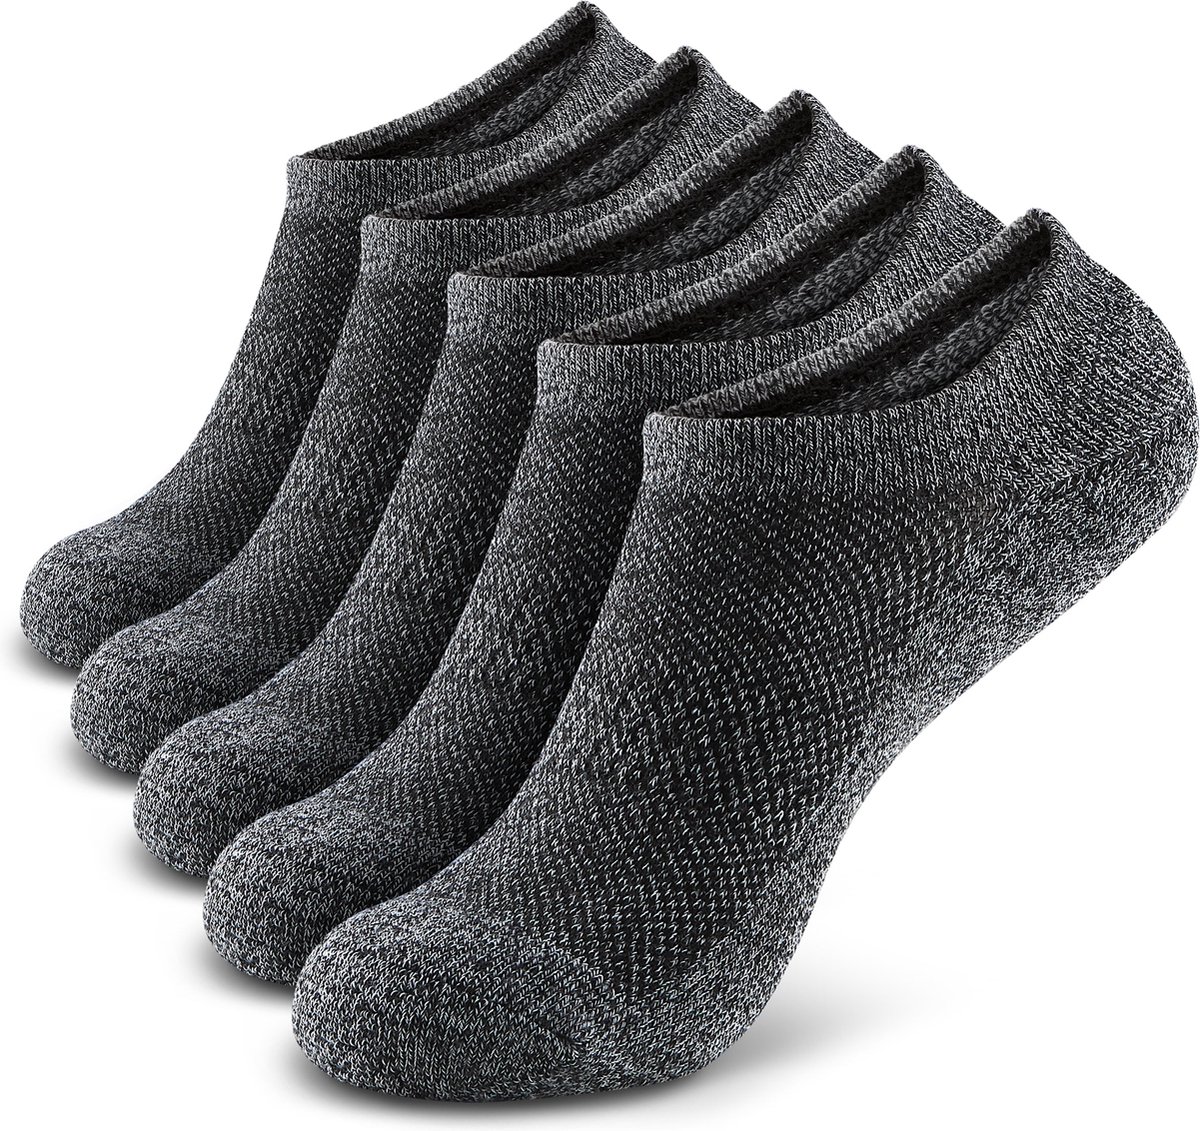 Monfoot - Zwarte Onzichtbare Lage Sokken met Siliconen Grip - Heren, Dames, Unisex - 5 Paar - Zwart - Elastisch en Ademend